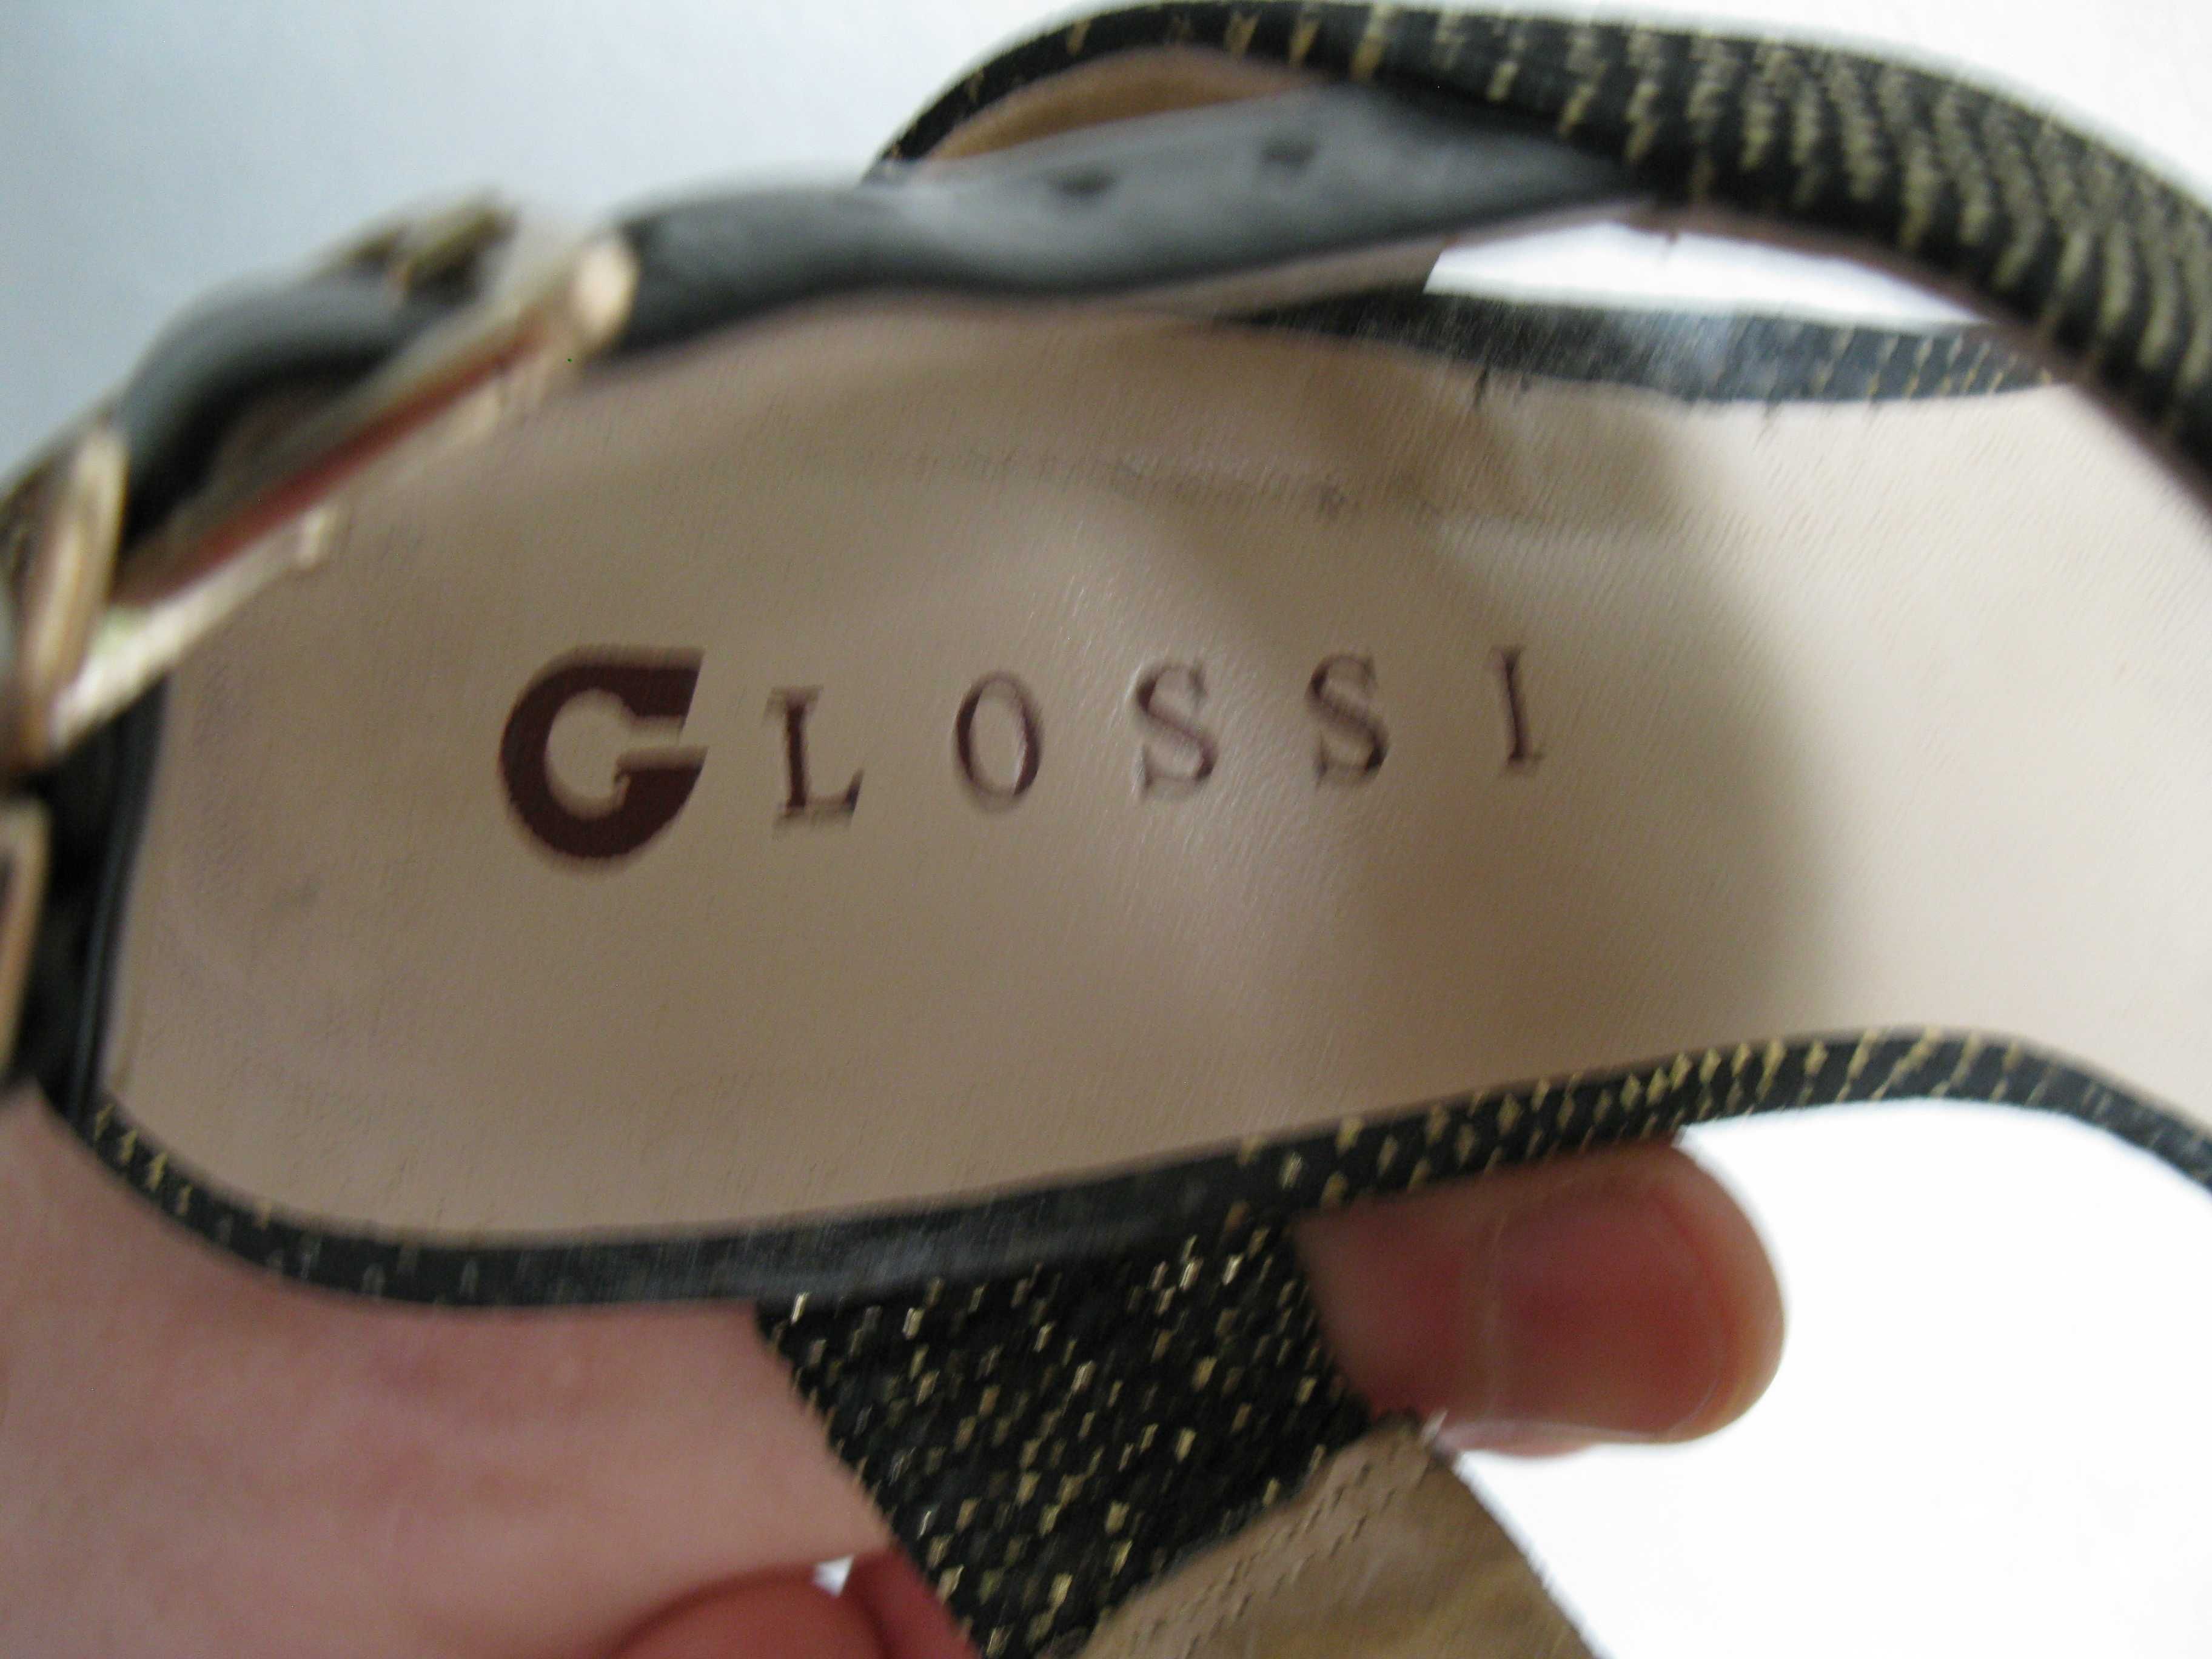 Туфли Glossi H8989-02 на каблуке или платформе женские размер 37